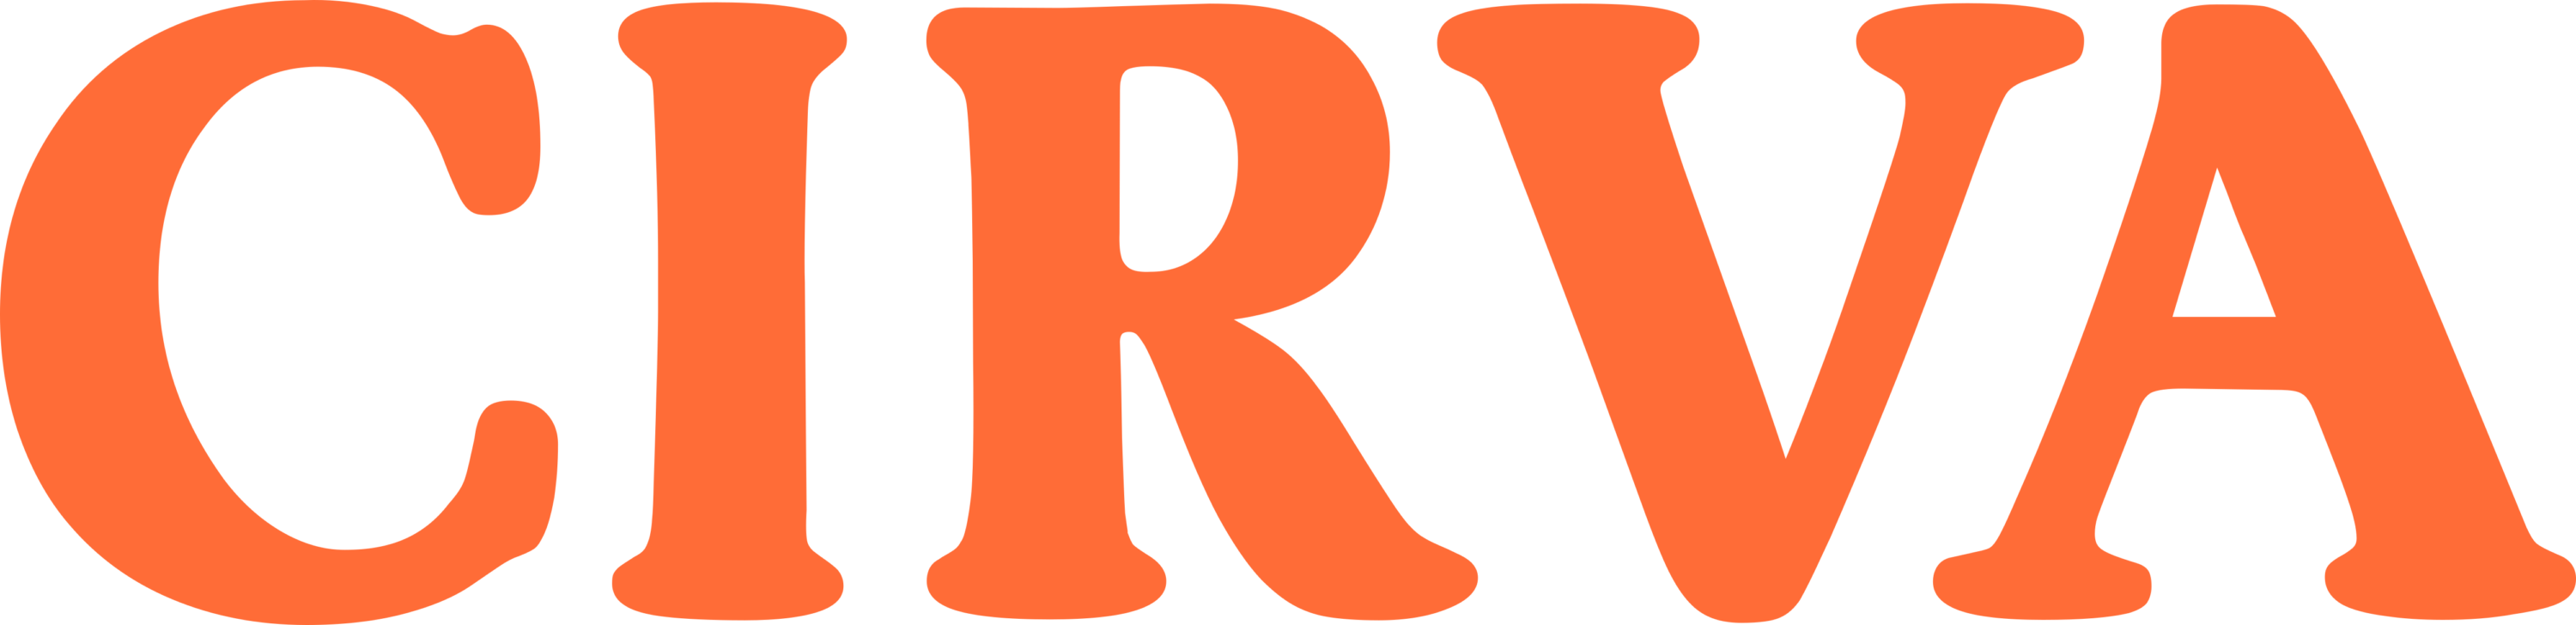 Cirva Logo